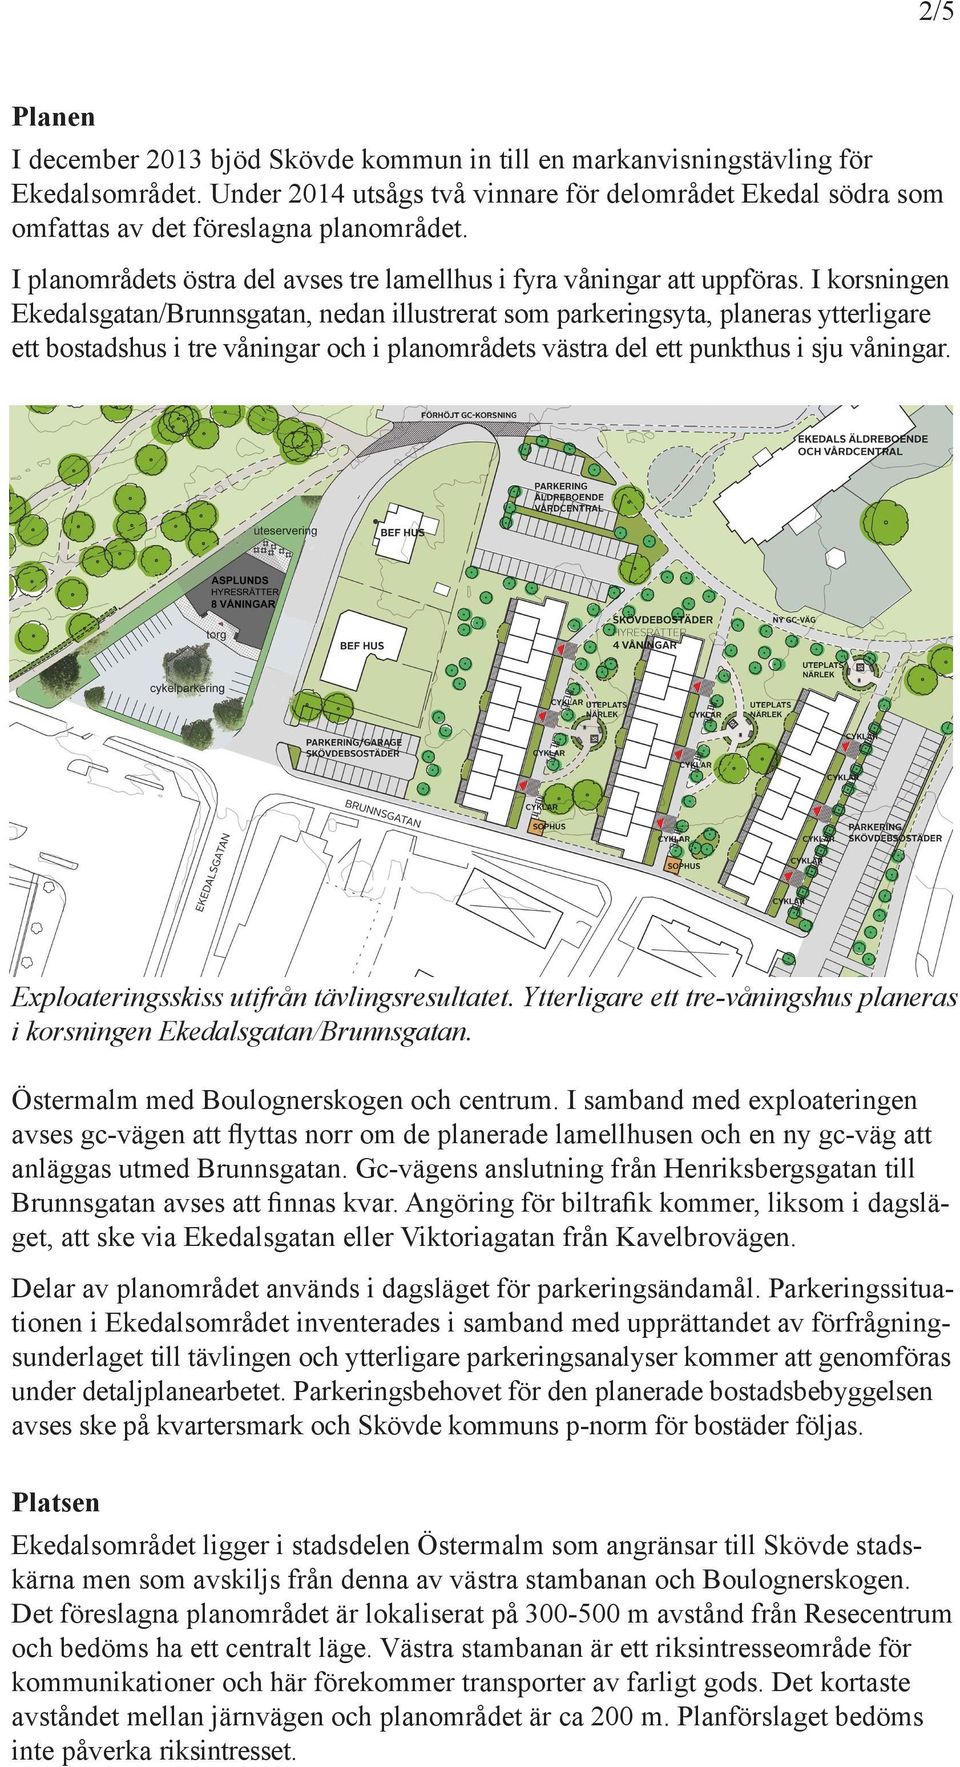 I korsige Ekedalsgata/Brusgata, eda illustrerat som parkerigsyta, plaeras ytterligare ett bostadshus i tre våigar och i plaområdets västra del ett pukthus i sju våigar.